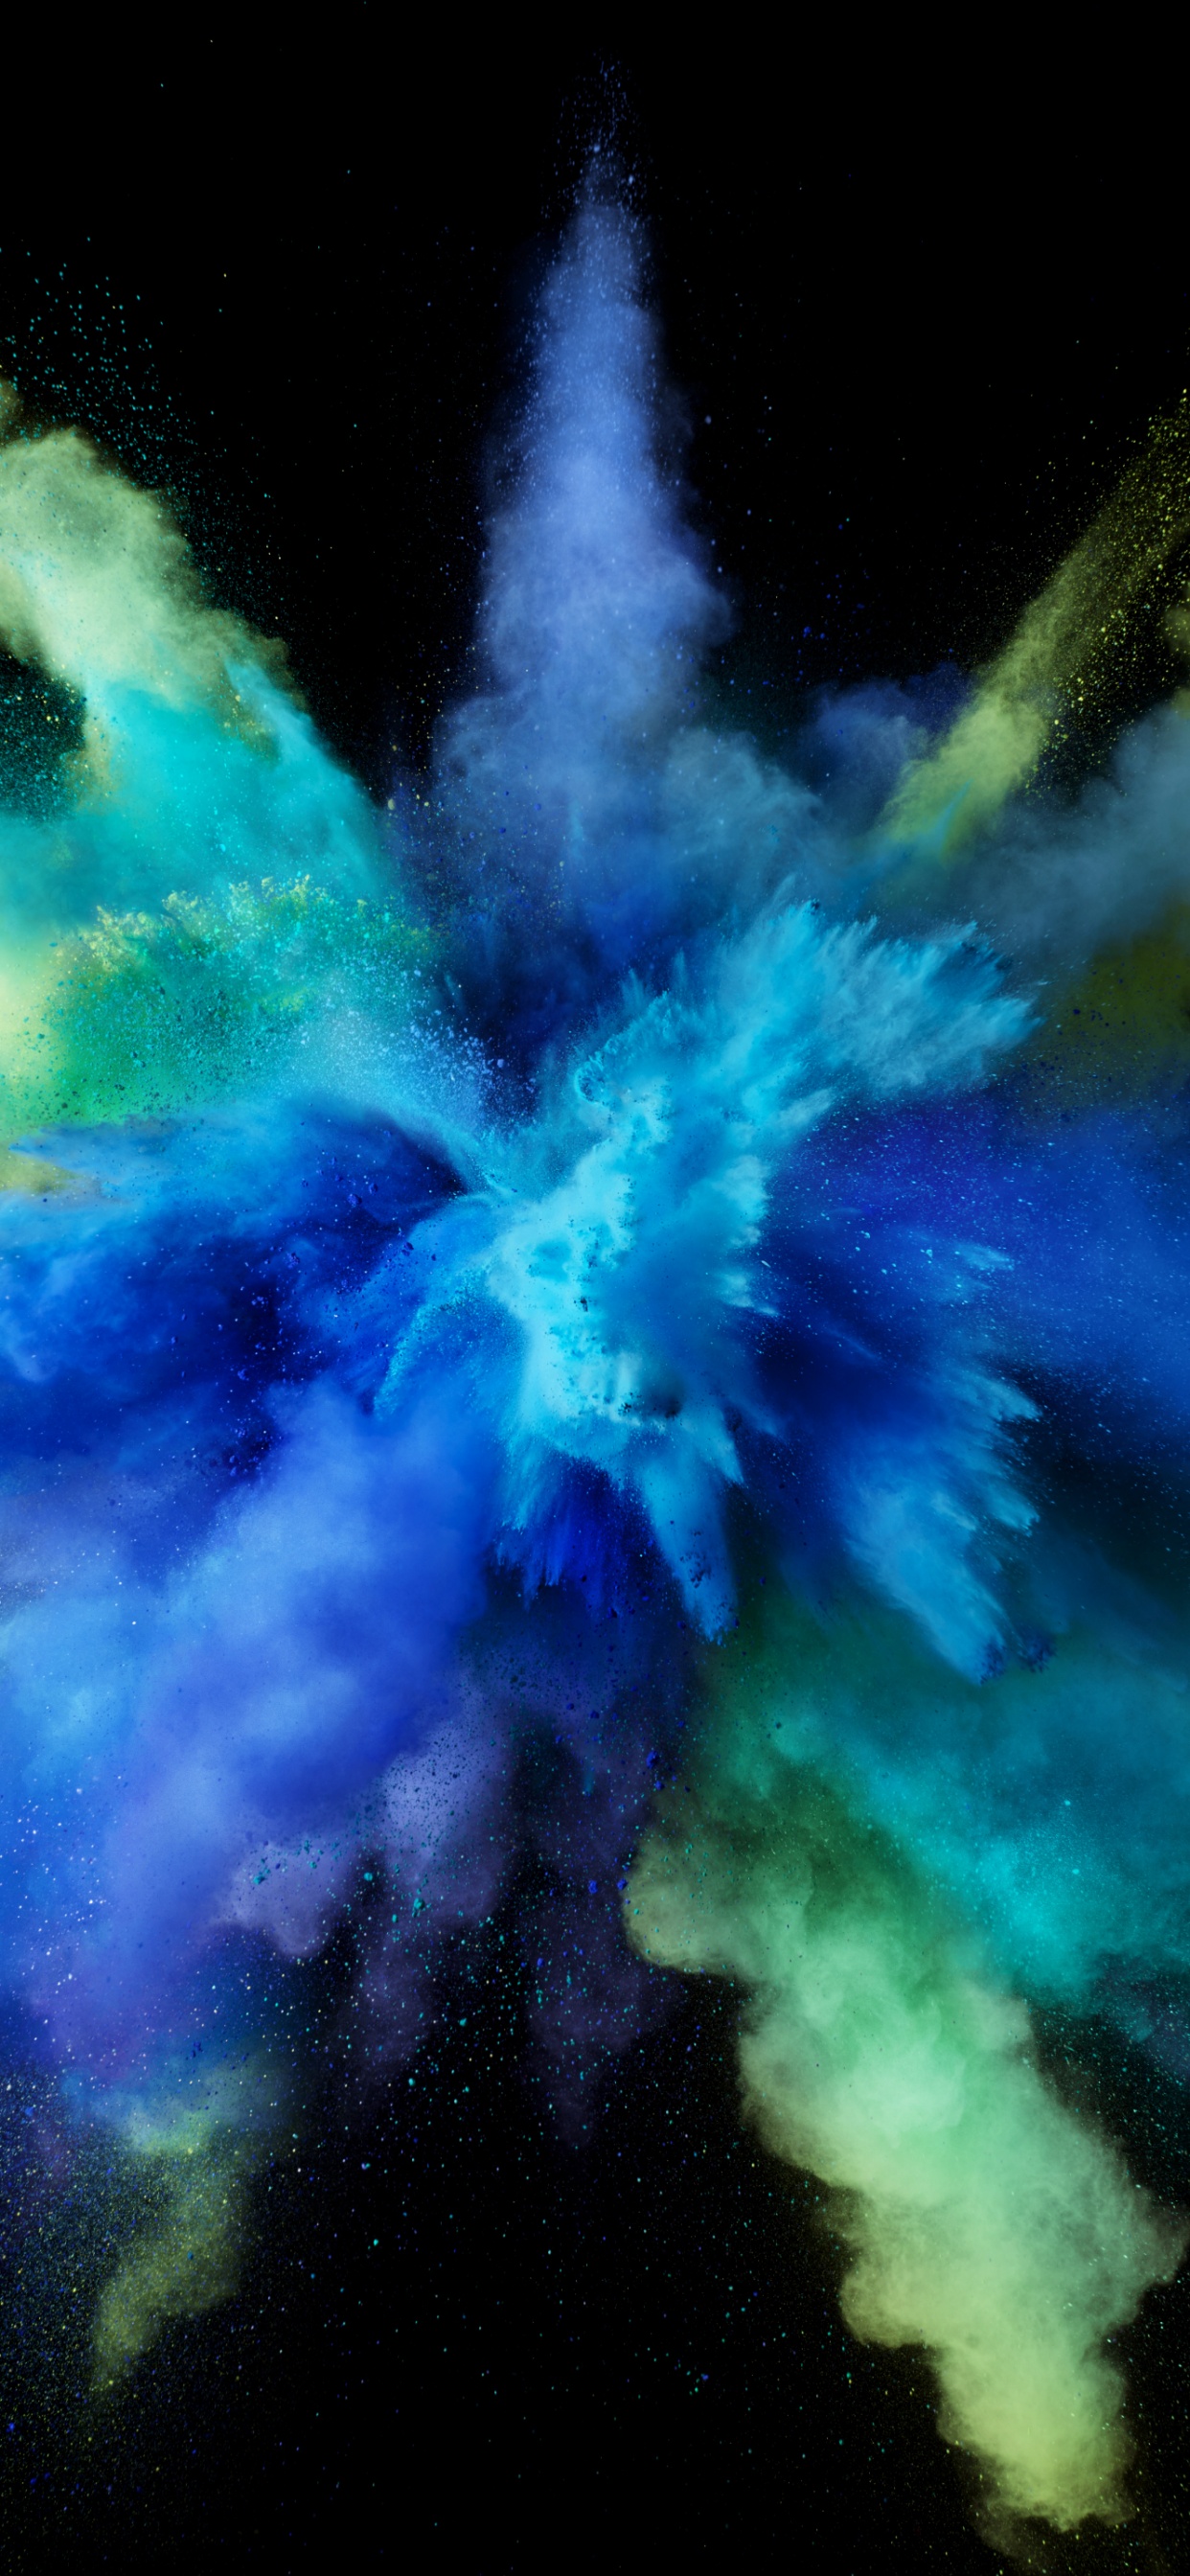 Color burst 4K Wallpaper, Splash, Blue, Black background